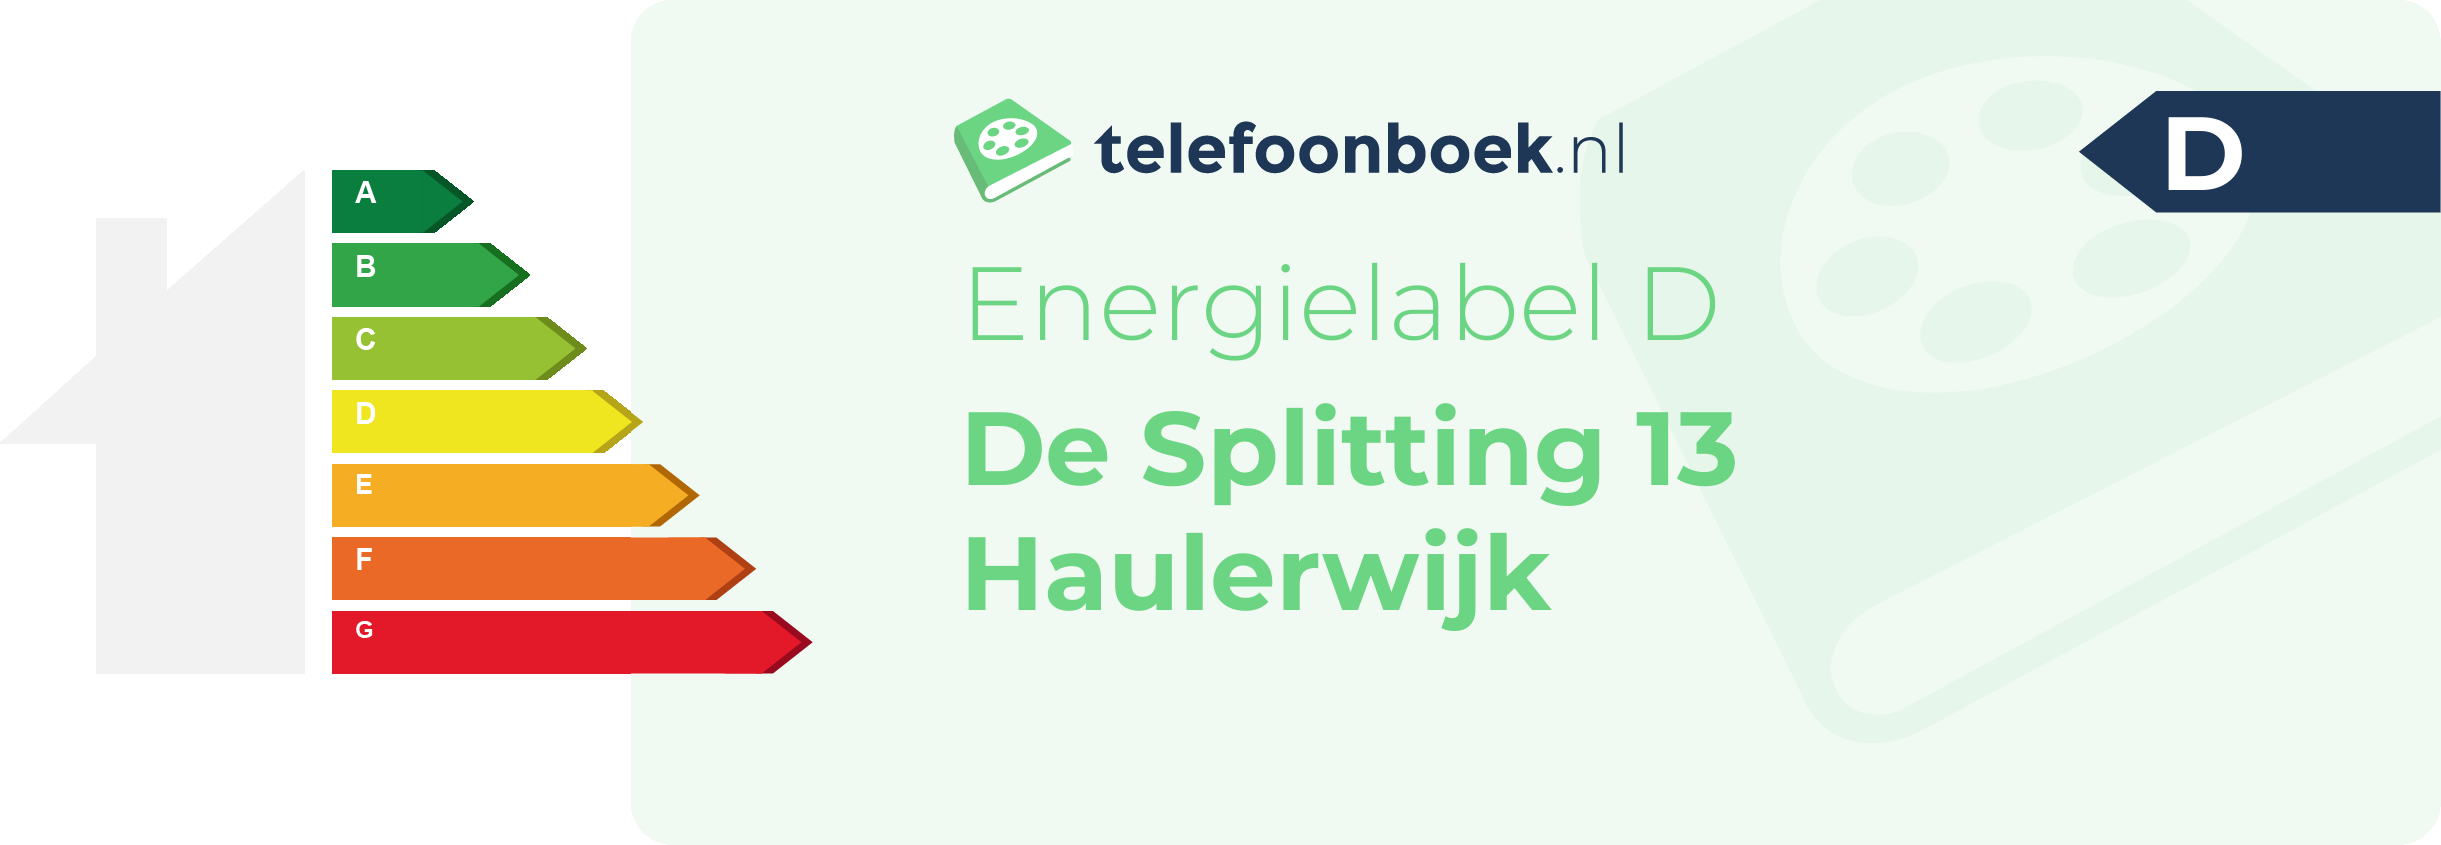 Energielabel De Splitting 13 Haulerwijk